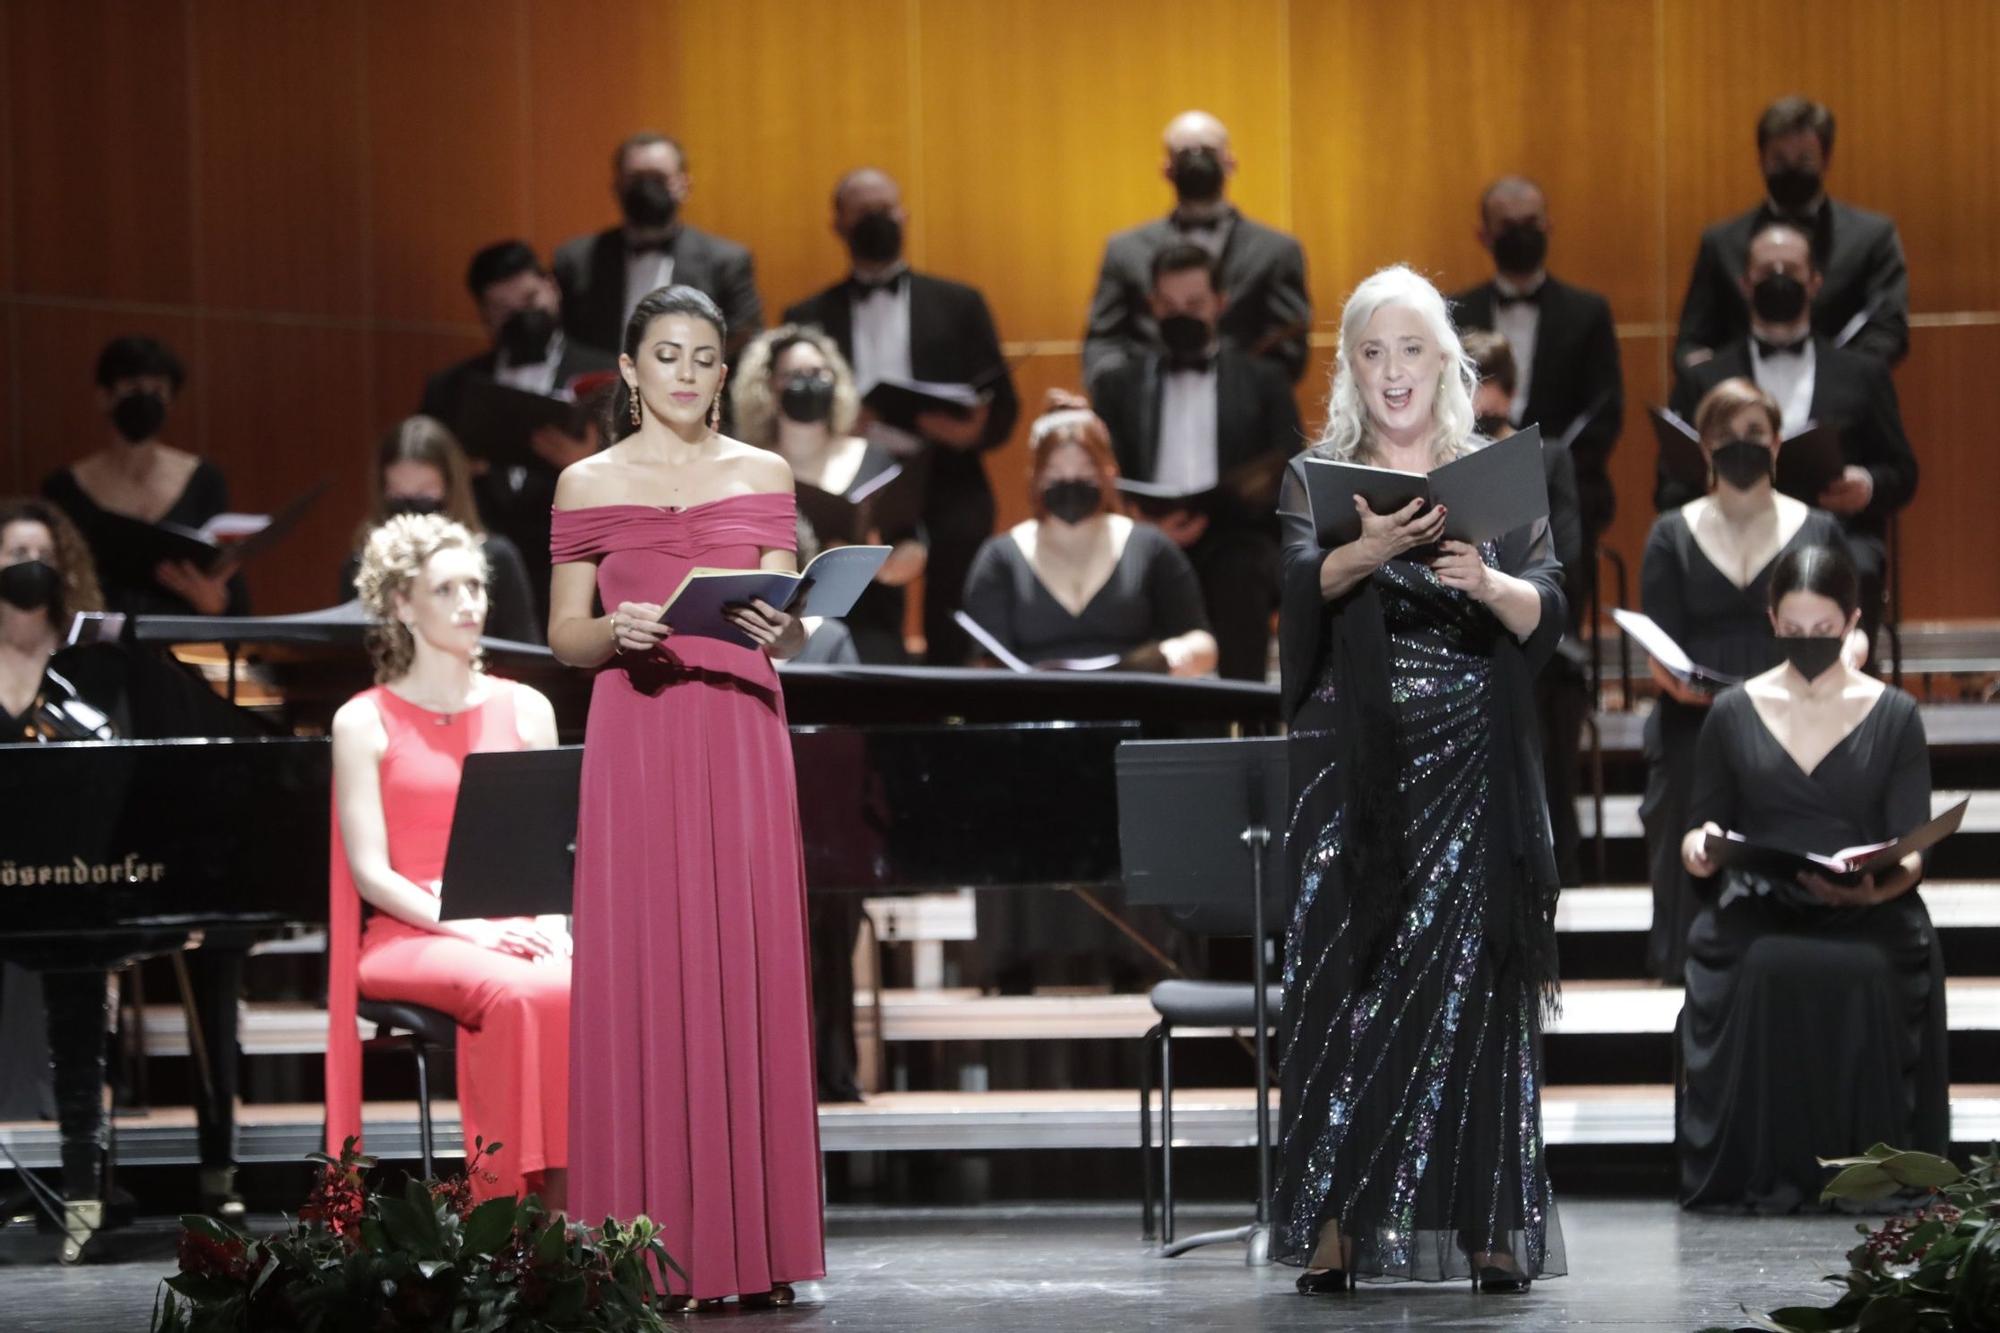 ‘El Oratorio de Noël’ suena en el concierto de Navidad del Principal